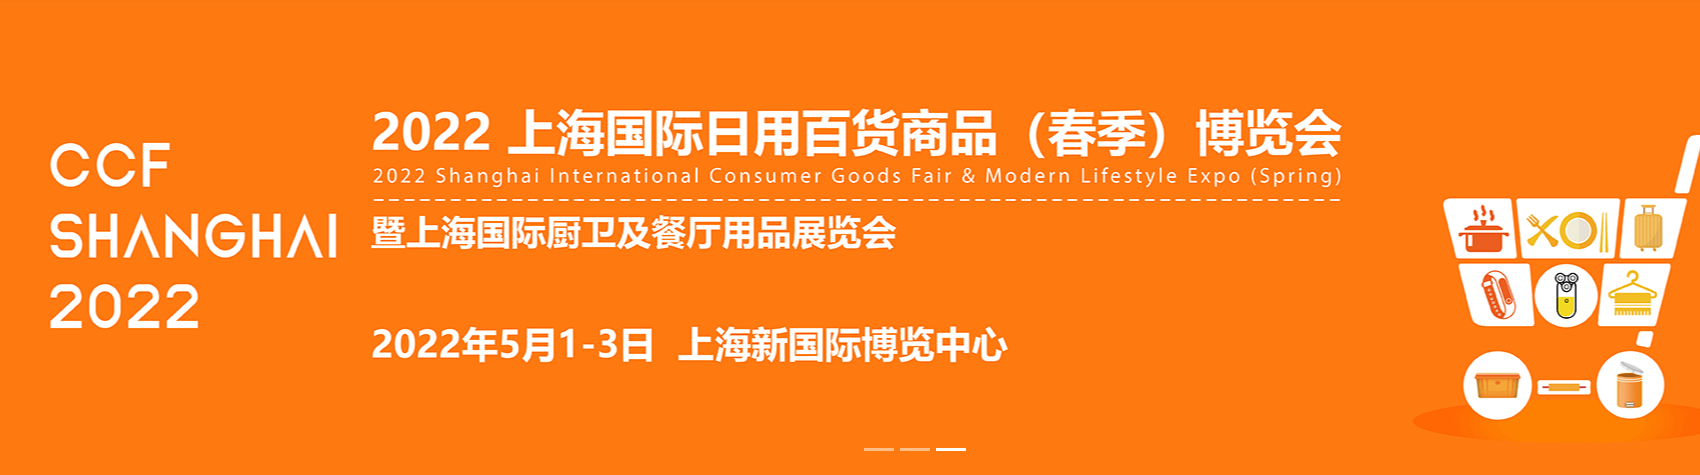 ccf2022中国国际日用百货商品(春季)博览会